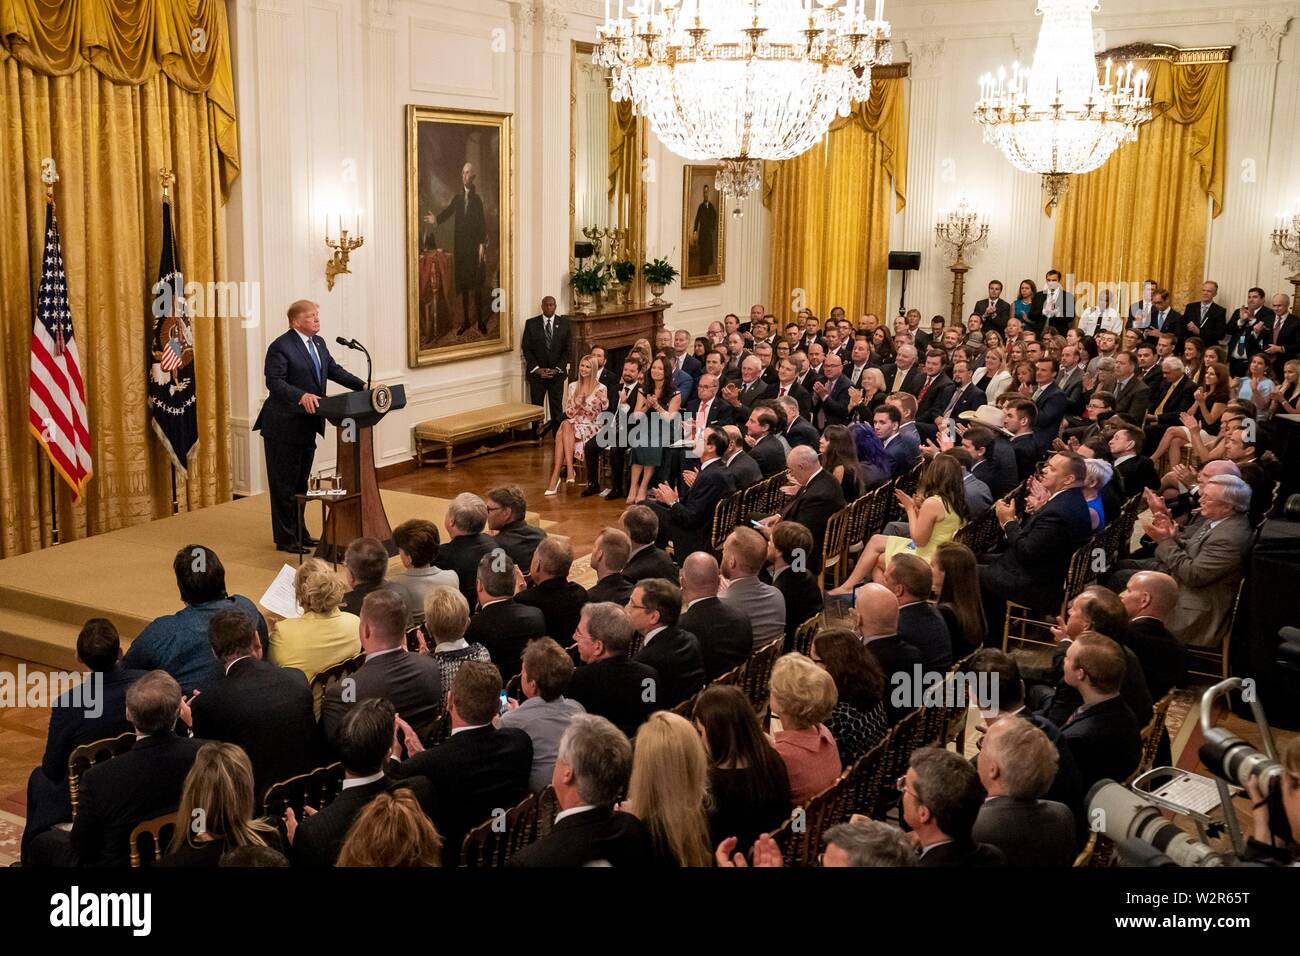 U.S presidente Donald Trump offre commento sulla Leadership ambientale nella Sala Est della Casa Bianca Luglio 8, 2019 a Washington, DC. Foto Stock